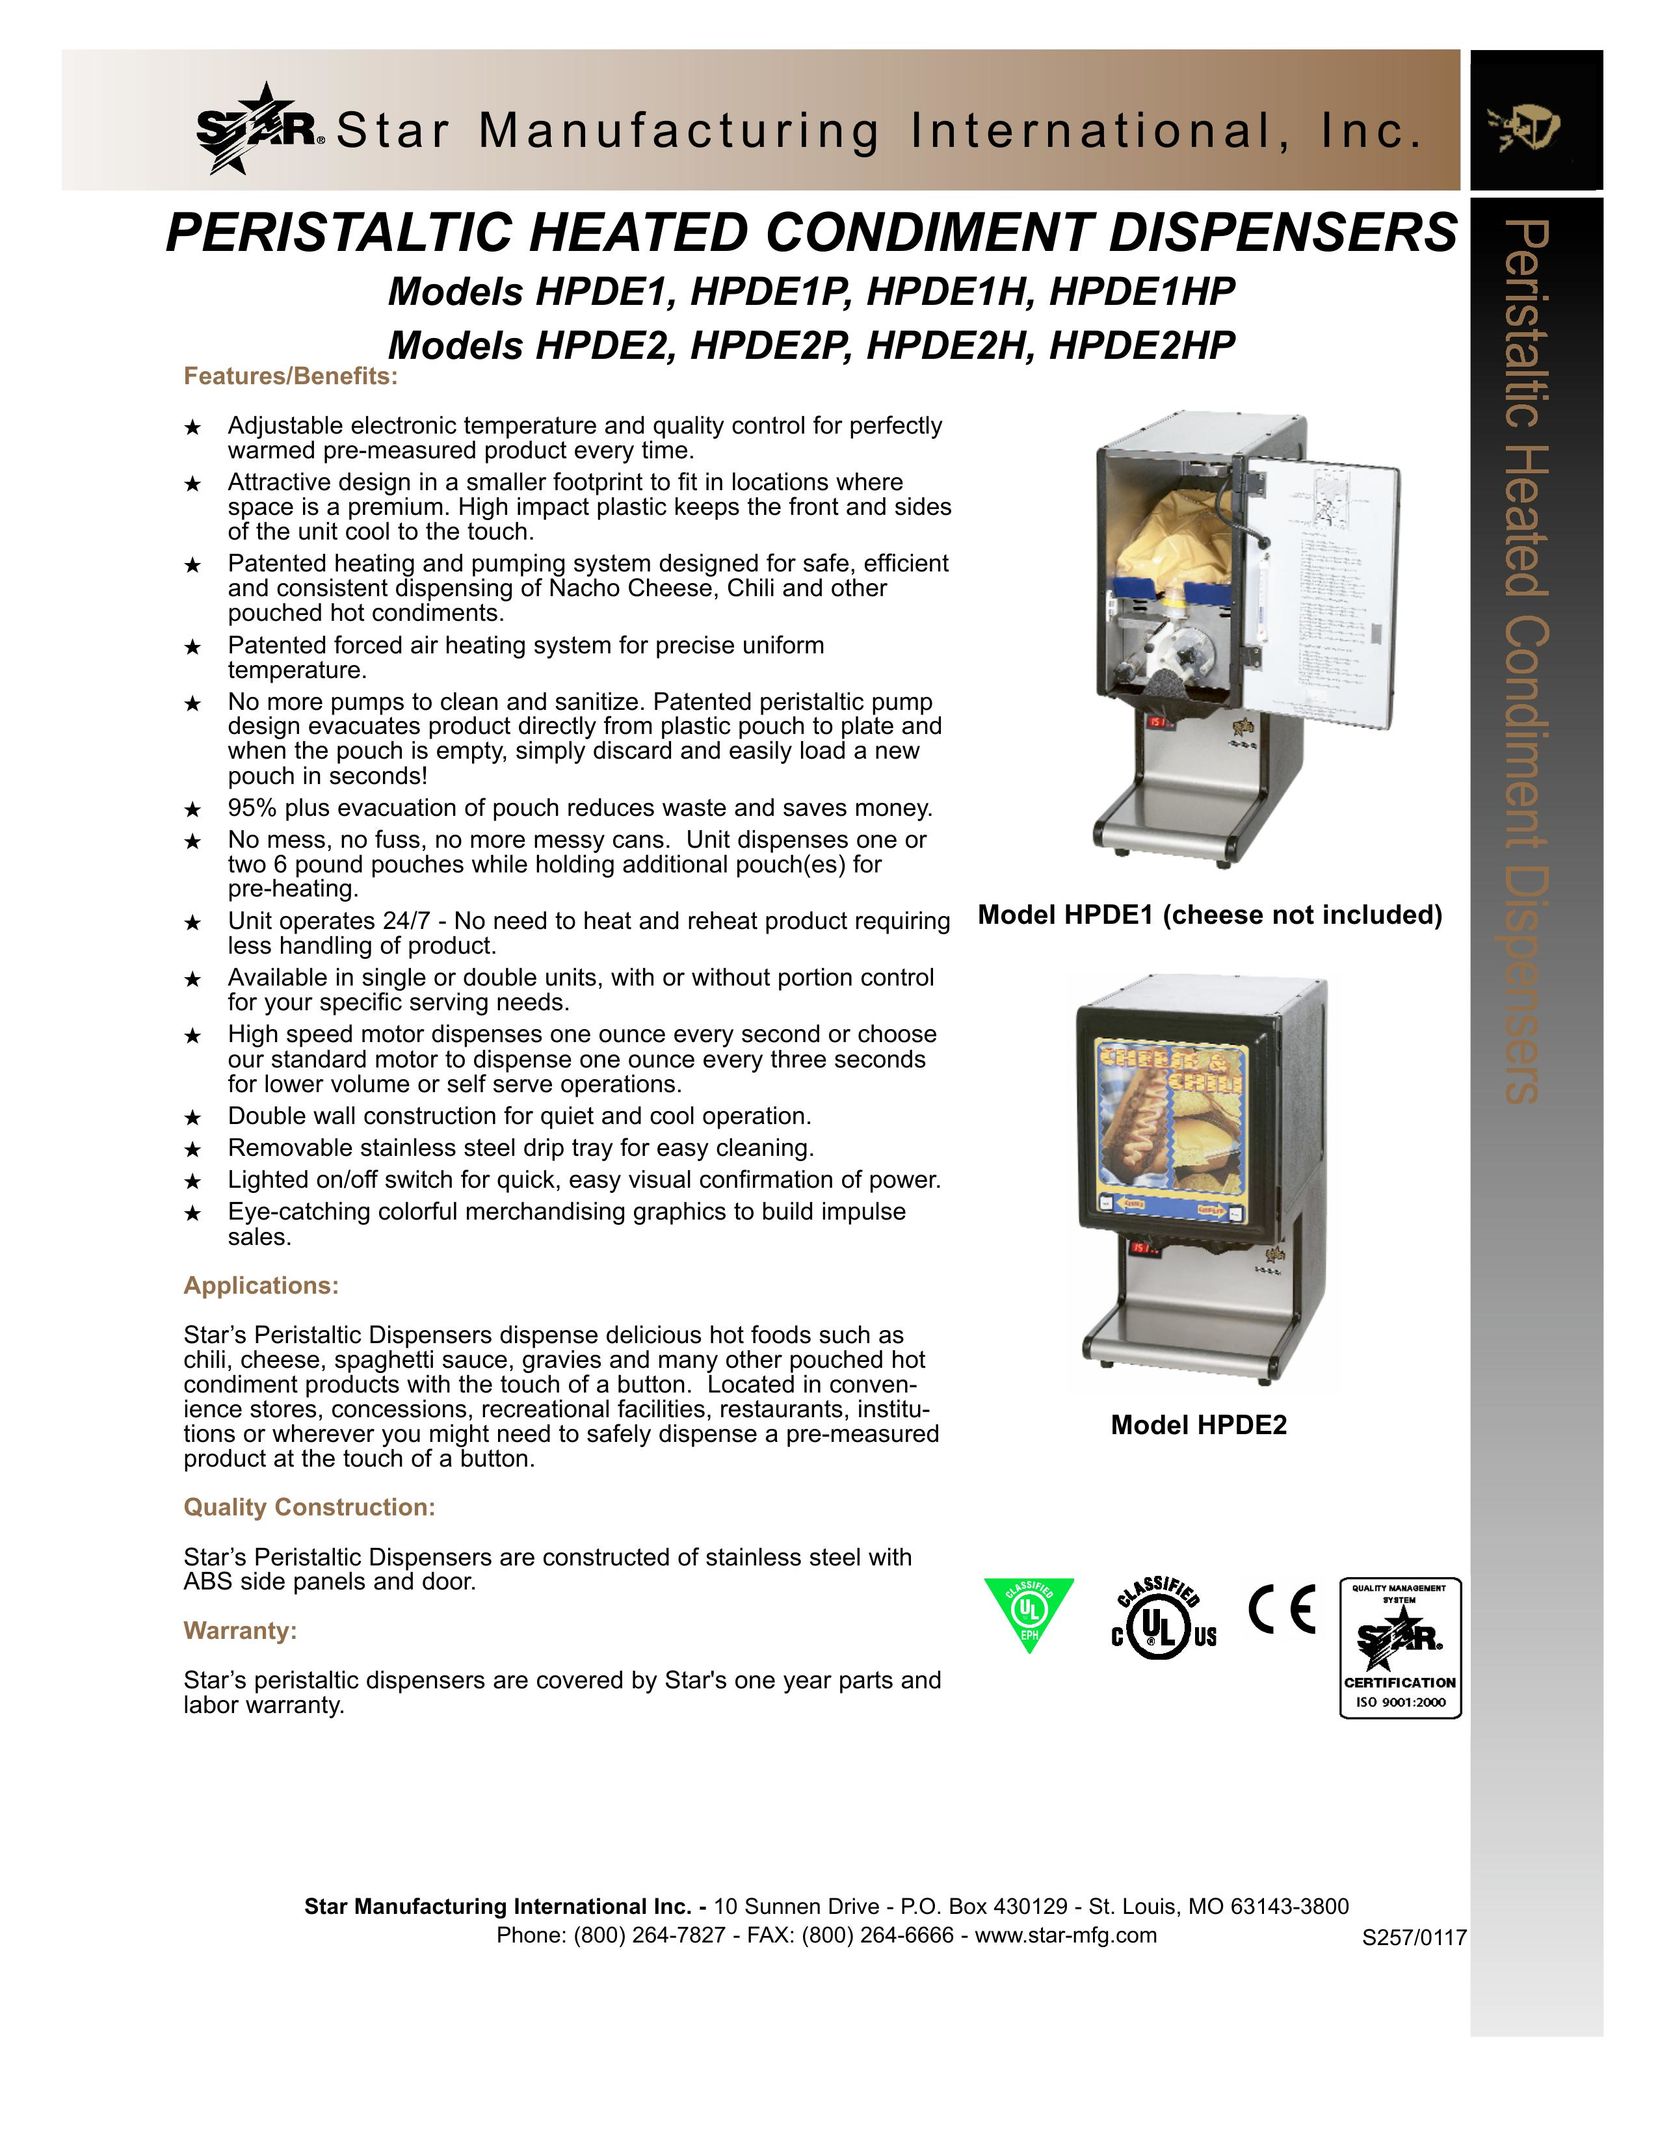 Star Manufacturing HPDE1H Beverage Dispenser User Manual